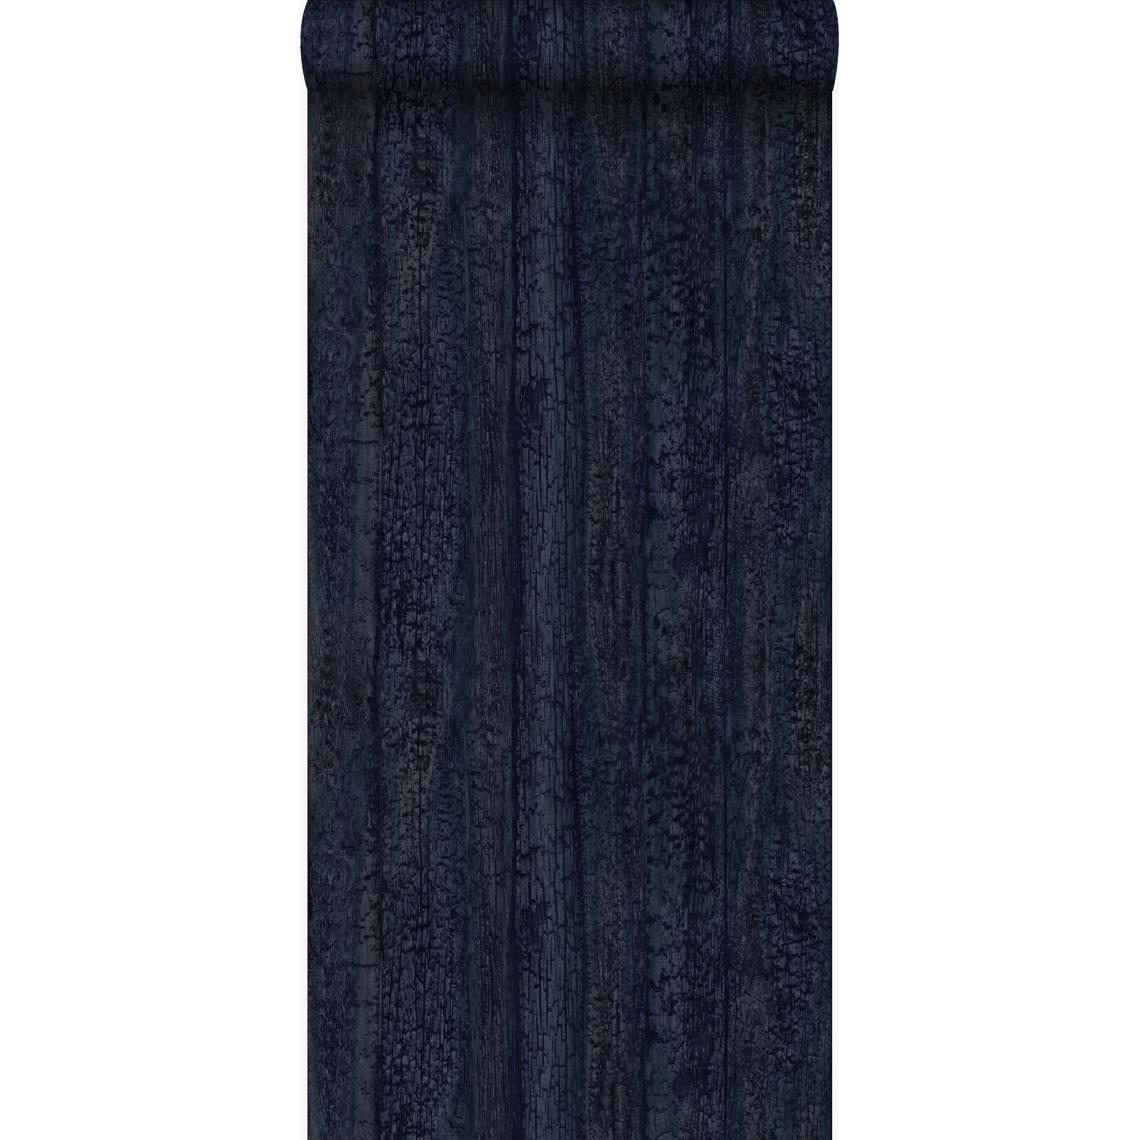 Origin - Origin papier peint imitation bois bleu foncé - 347532 - 53 cm x 10.05 m - Papier peint